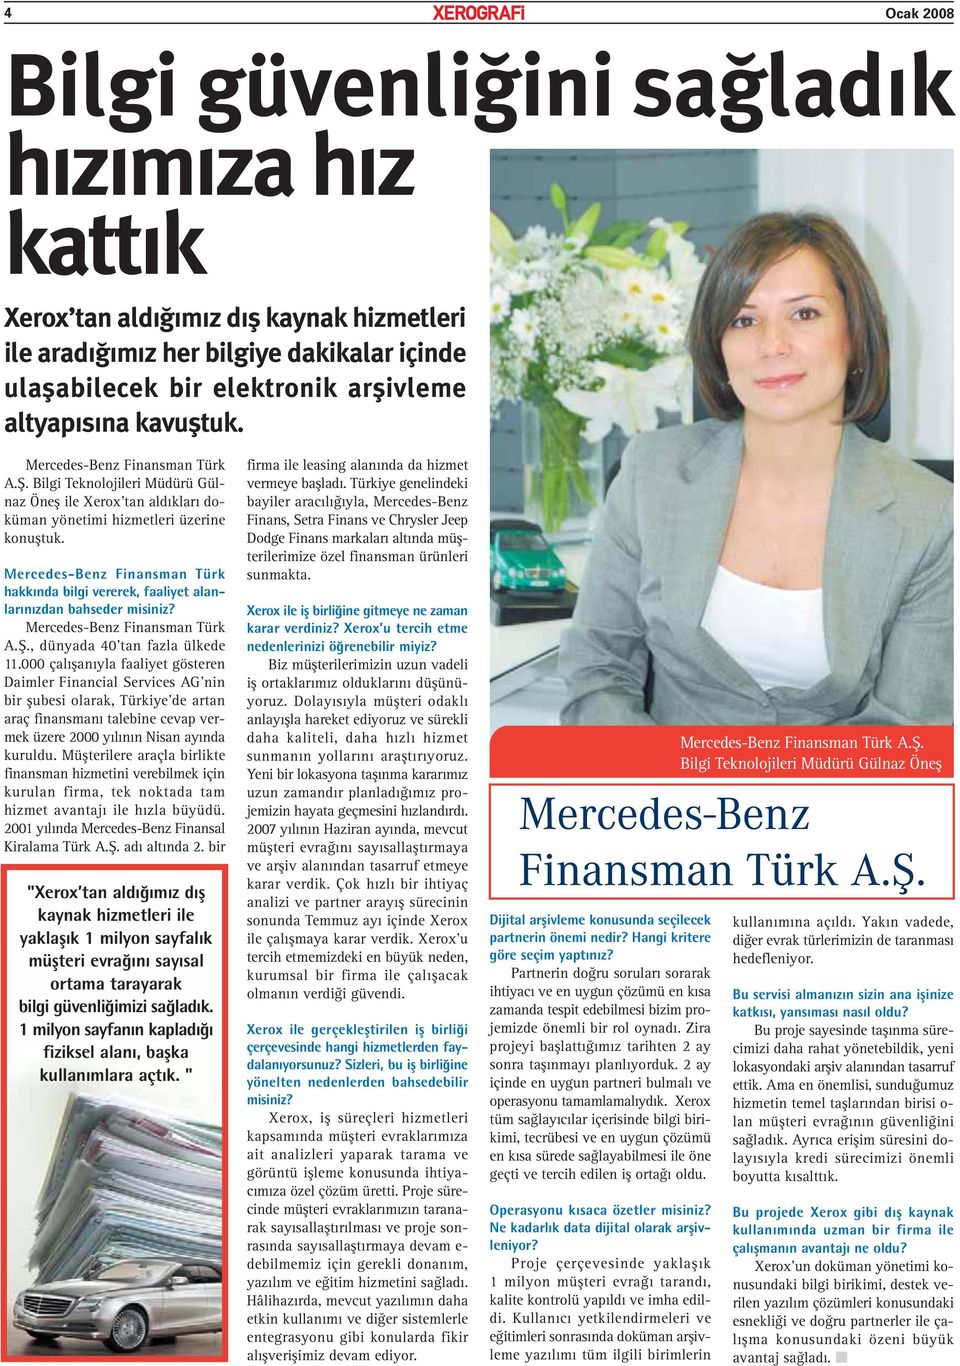 Mercedes-Benz Finansman Türk hakkında bilgi vererek, faaliyet alanlarınızdan bahseder misiniz? Mercedes-Benz Finansman Türk A.Ş., dünyada 40 tan fazla ülkede 11.